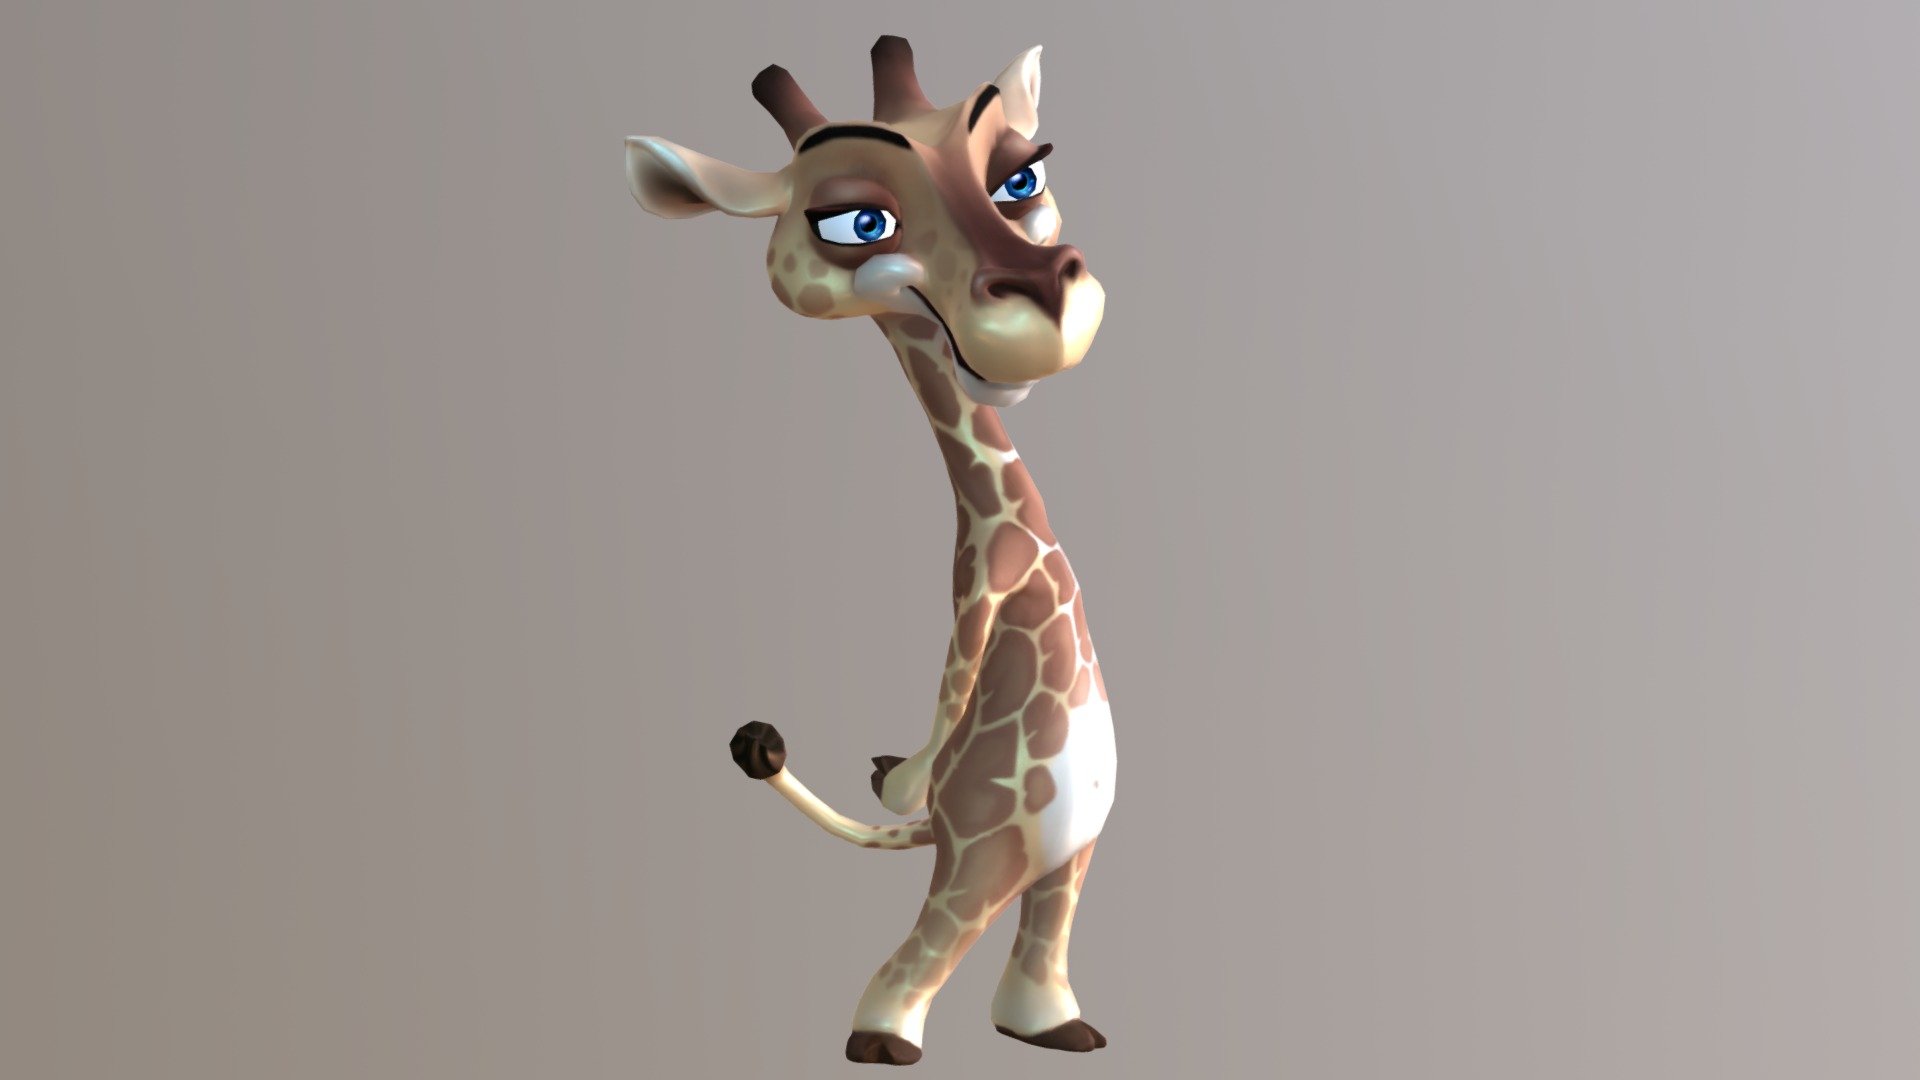 Jungle Animal Cartoon Giraffe Buy Royalty Free 3d Model By Josediaz Josediaz 5f03964